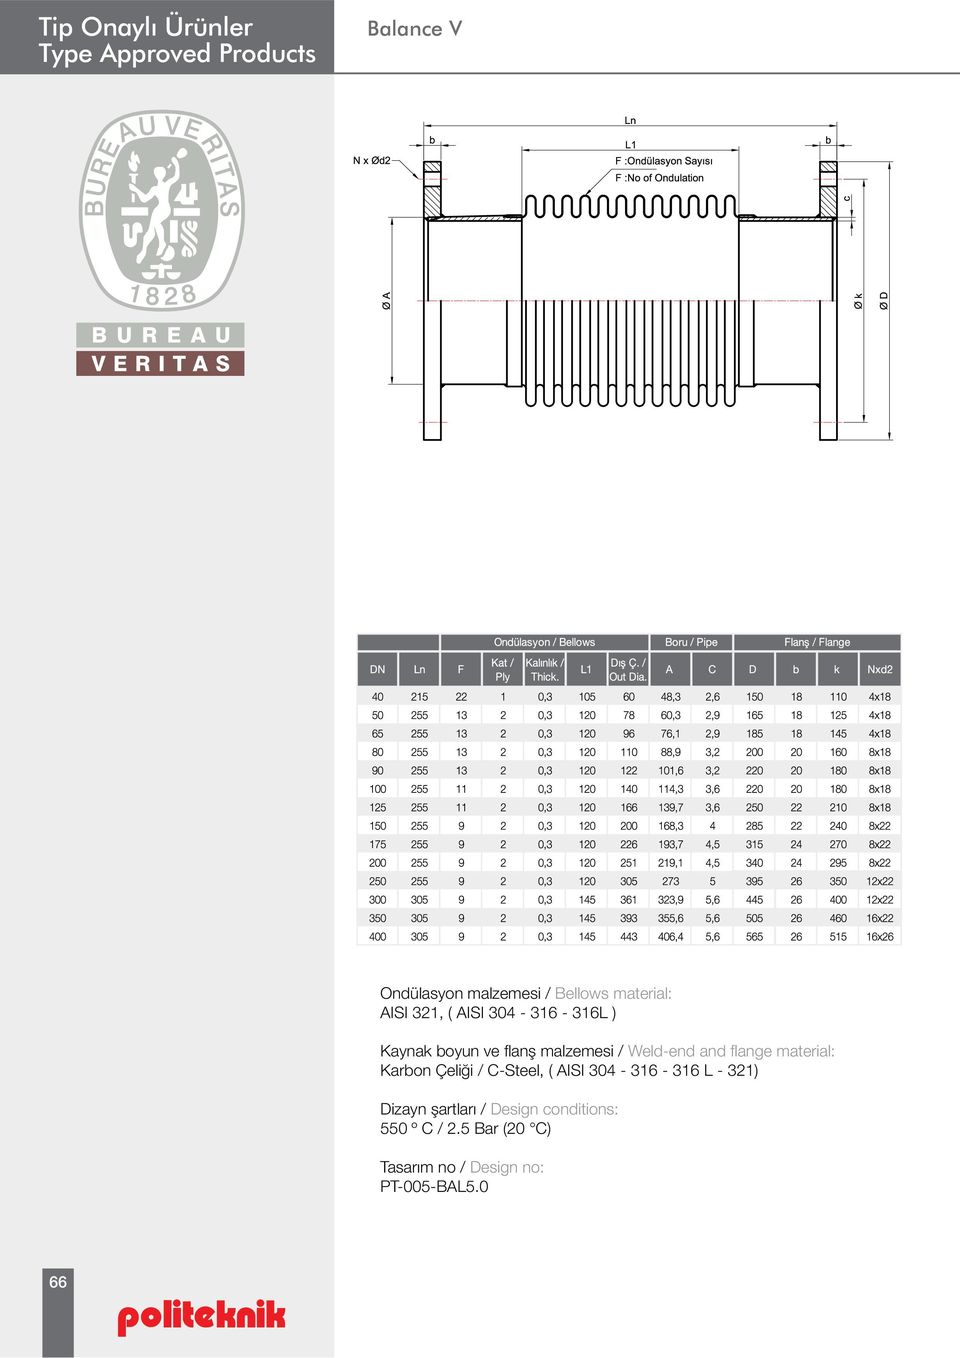 Çeliği / C-Steel, ( AISI 304-316 - 316 L - 321) Dizayn şartları / Design